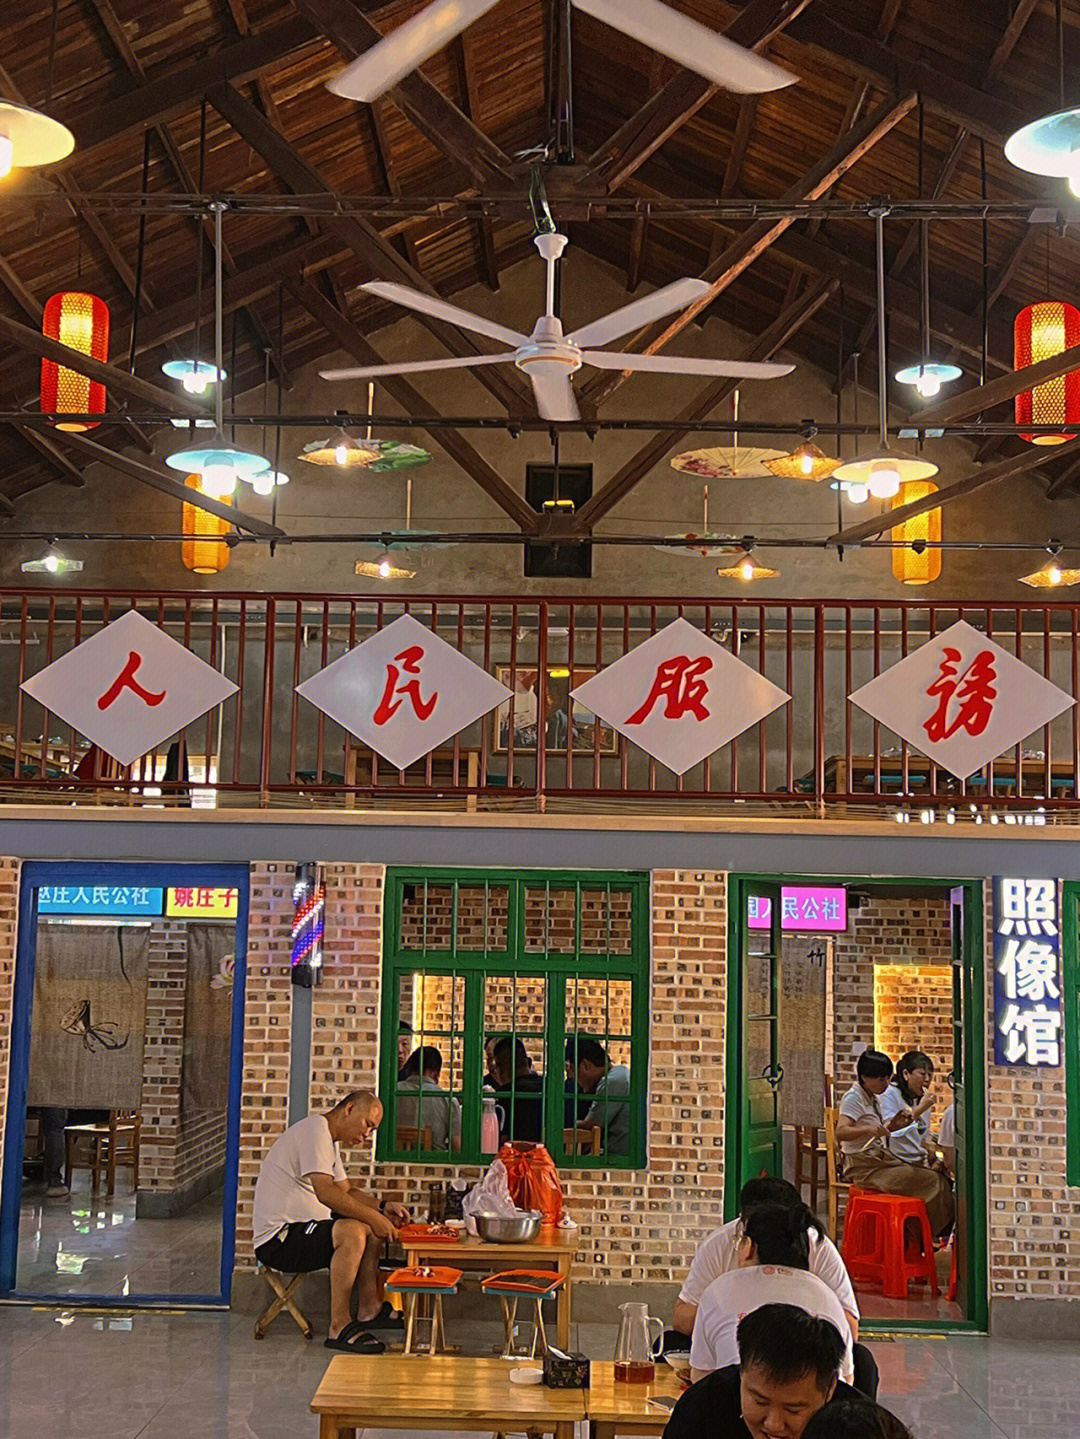 沧州市天一坊饭店位置图片